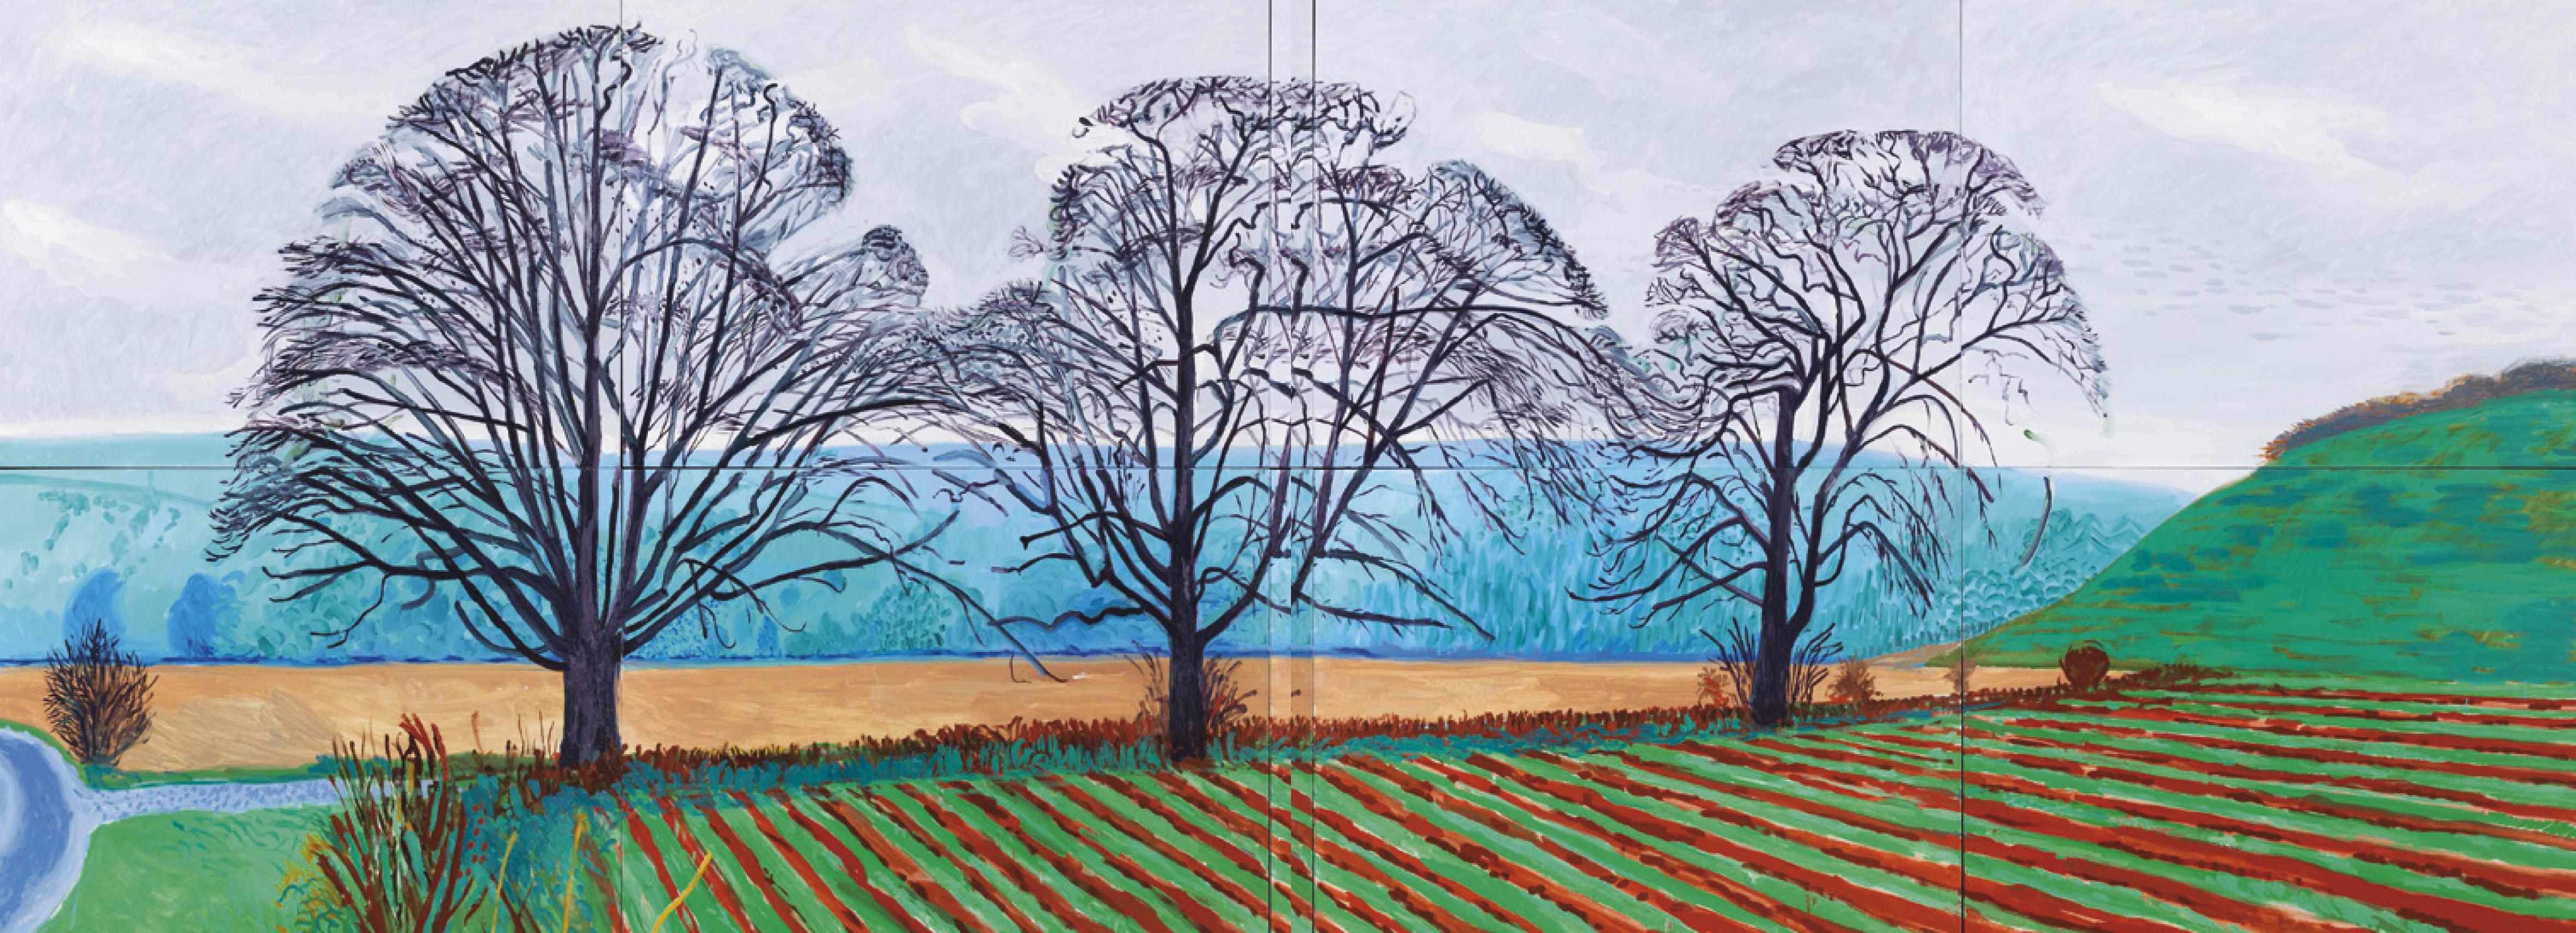 David Hockney: Három fa Thixendale közelében, 2007 tele, 2007, olaj, vászon, 8 tábla, egyenként: 91,44 × 121,92 cm, teljes kép: 183,52 x 489,59 cm © David Hockney © Fotó: Richard Schmidt